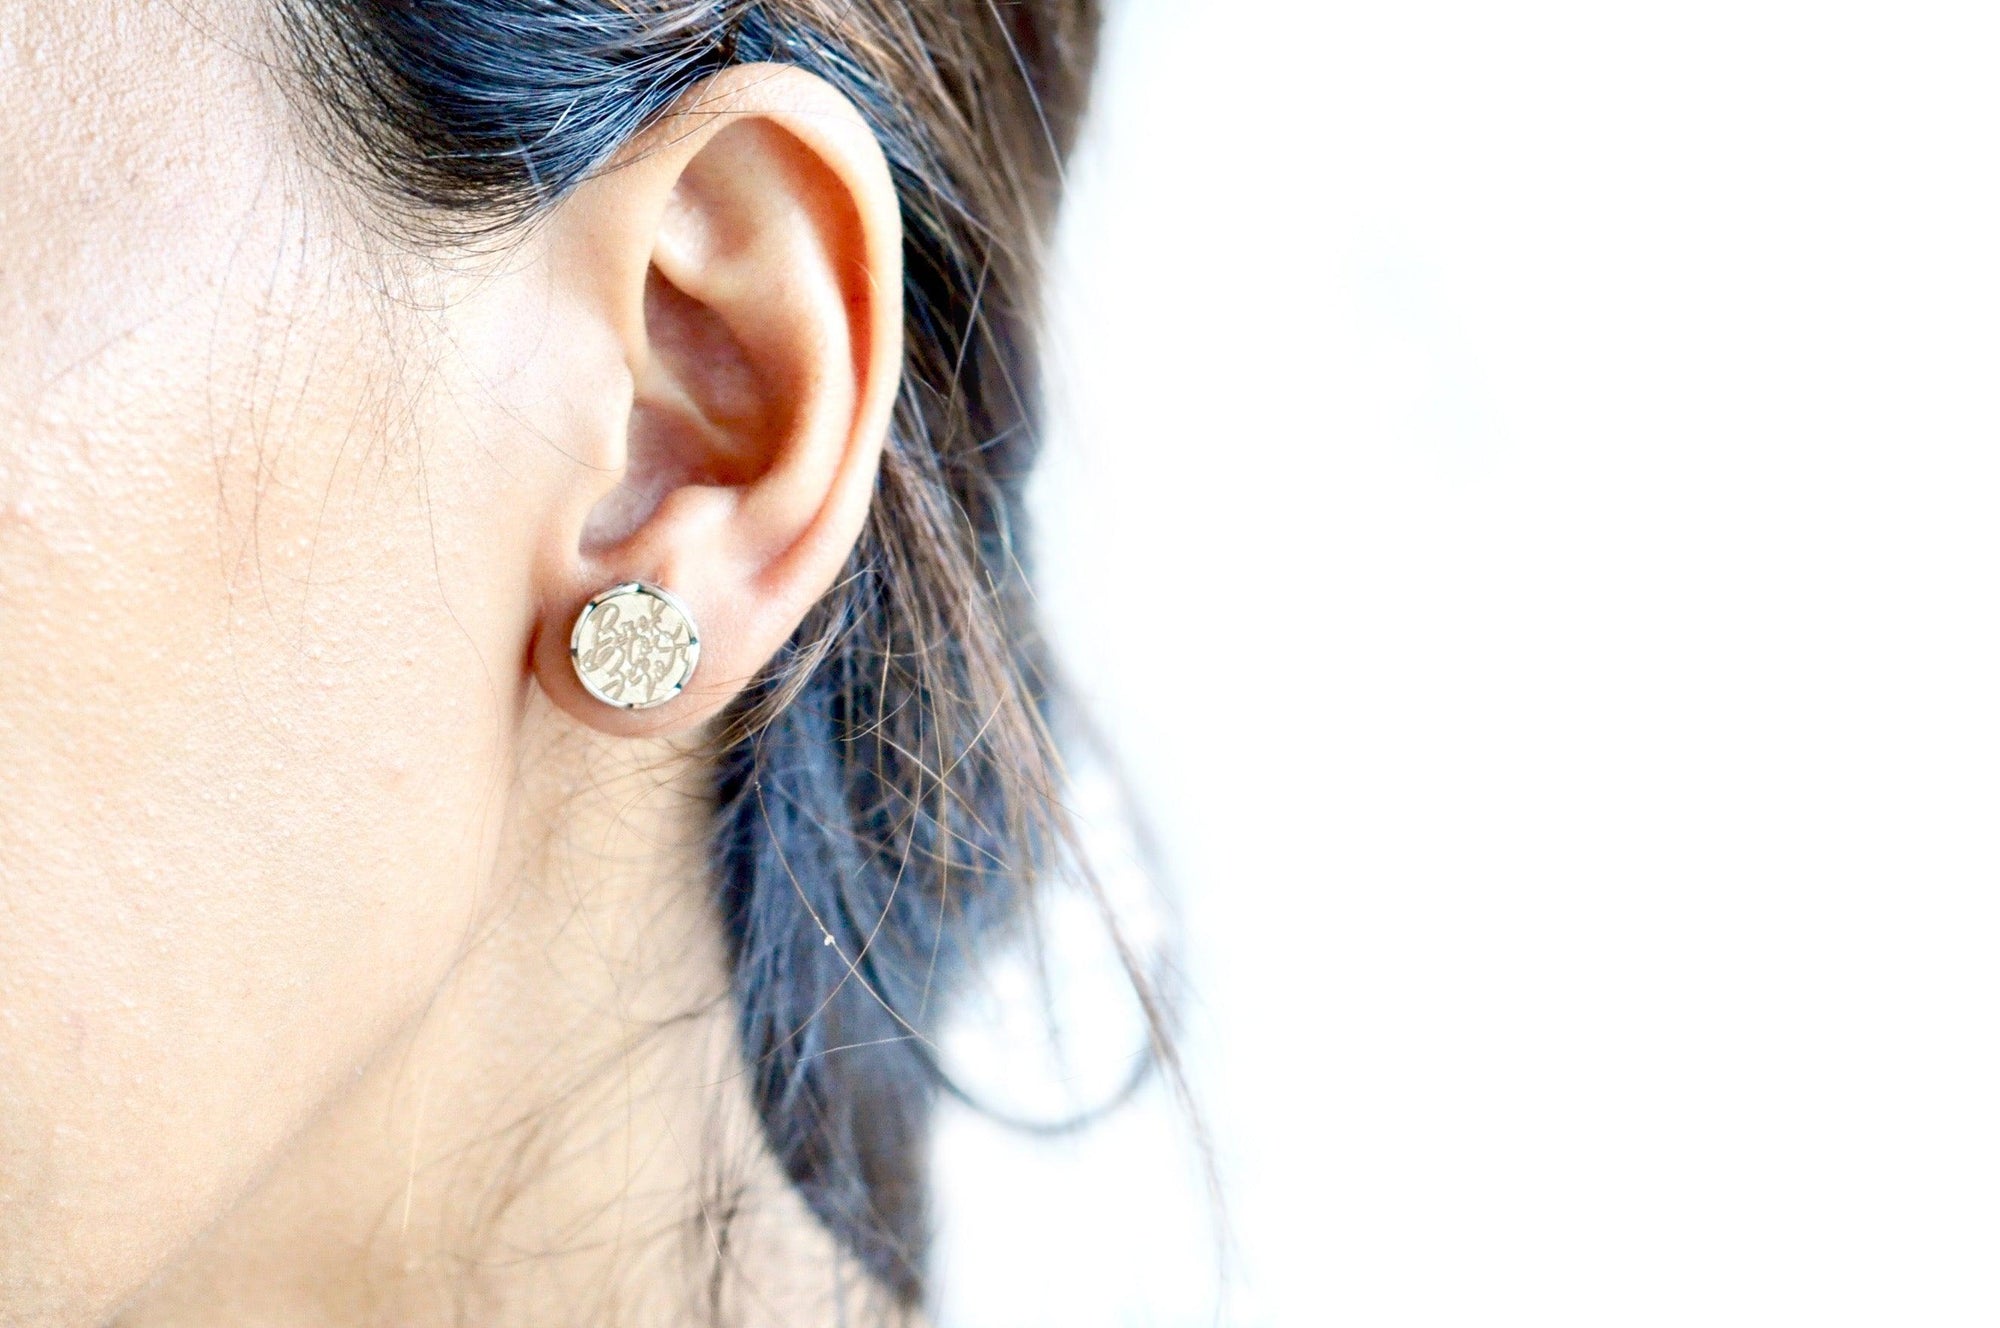 Sakura Scalloped Signet Earrings - Backtozero B20 - brass, cherry blossom, earrings, floral, Flower, flowers, scalloped earrings, scallopedearrings, signet, silver, stud, stud earrings